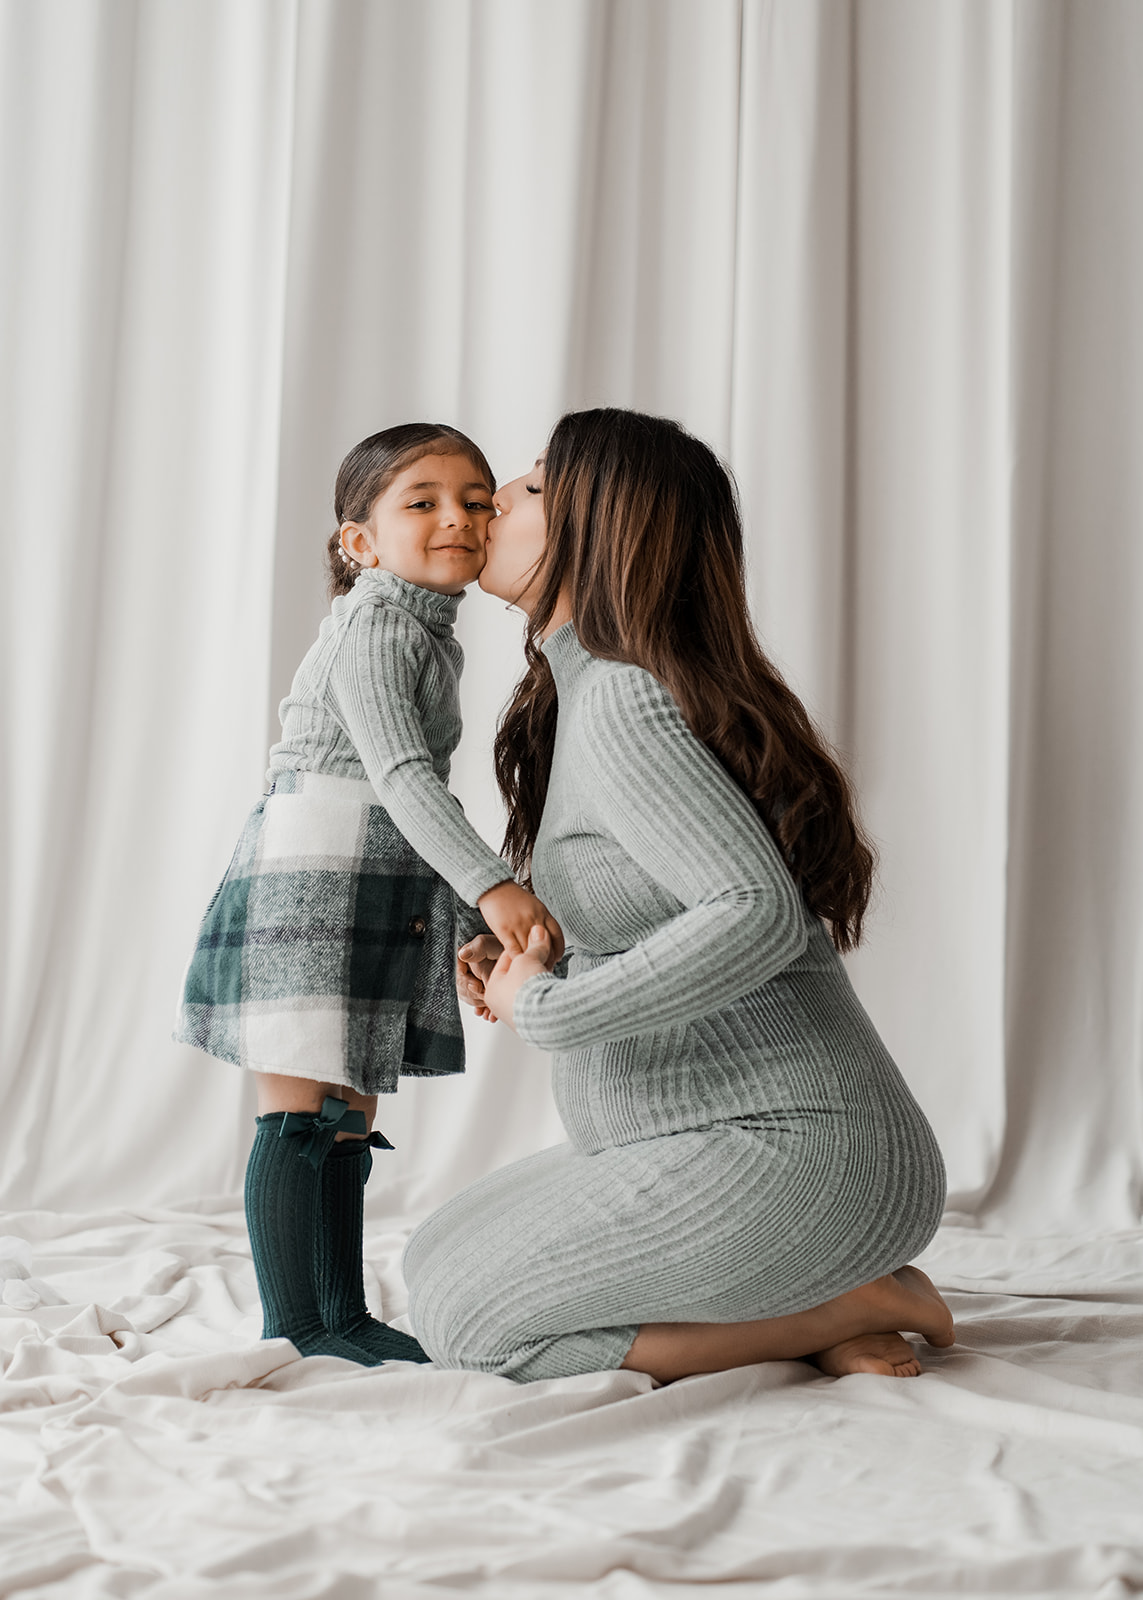 mor og datter til gravidfotografering. kys på kinden.